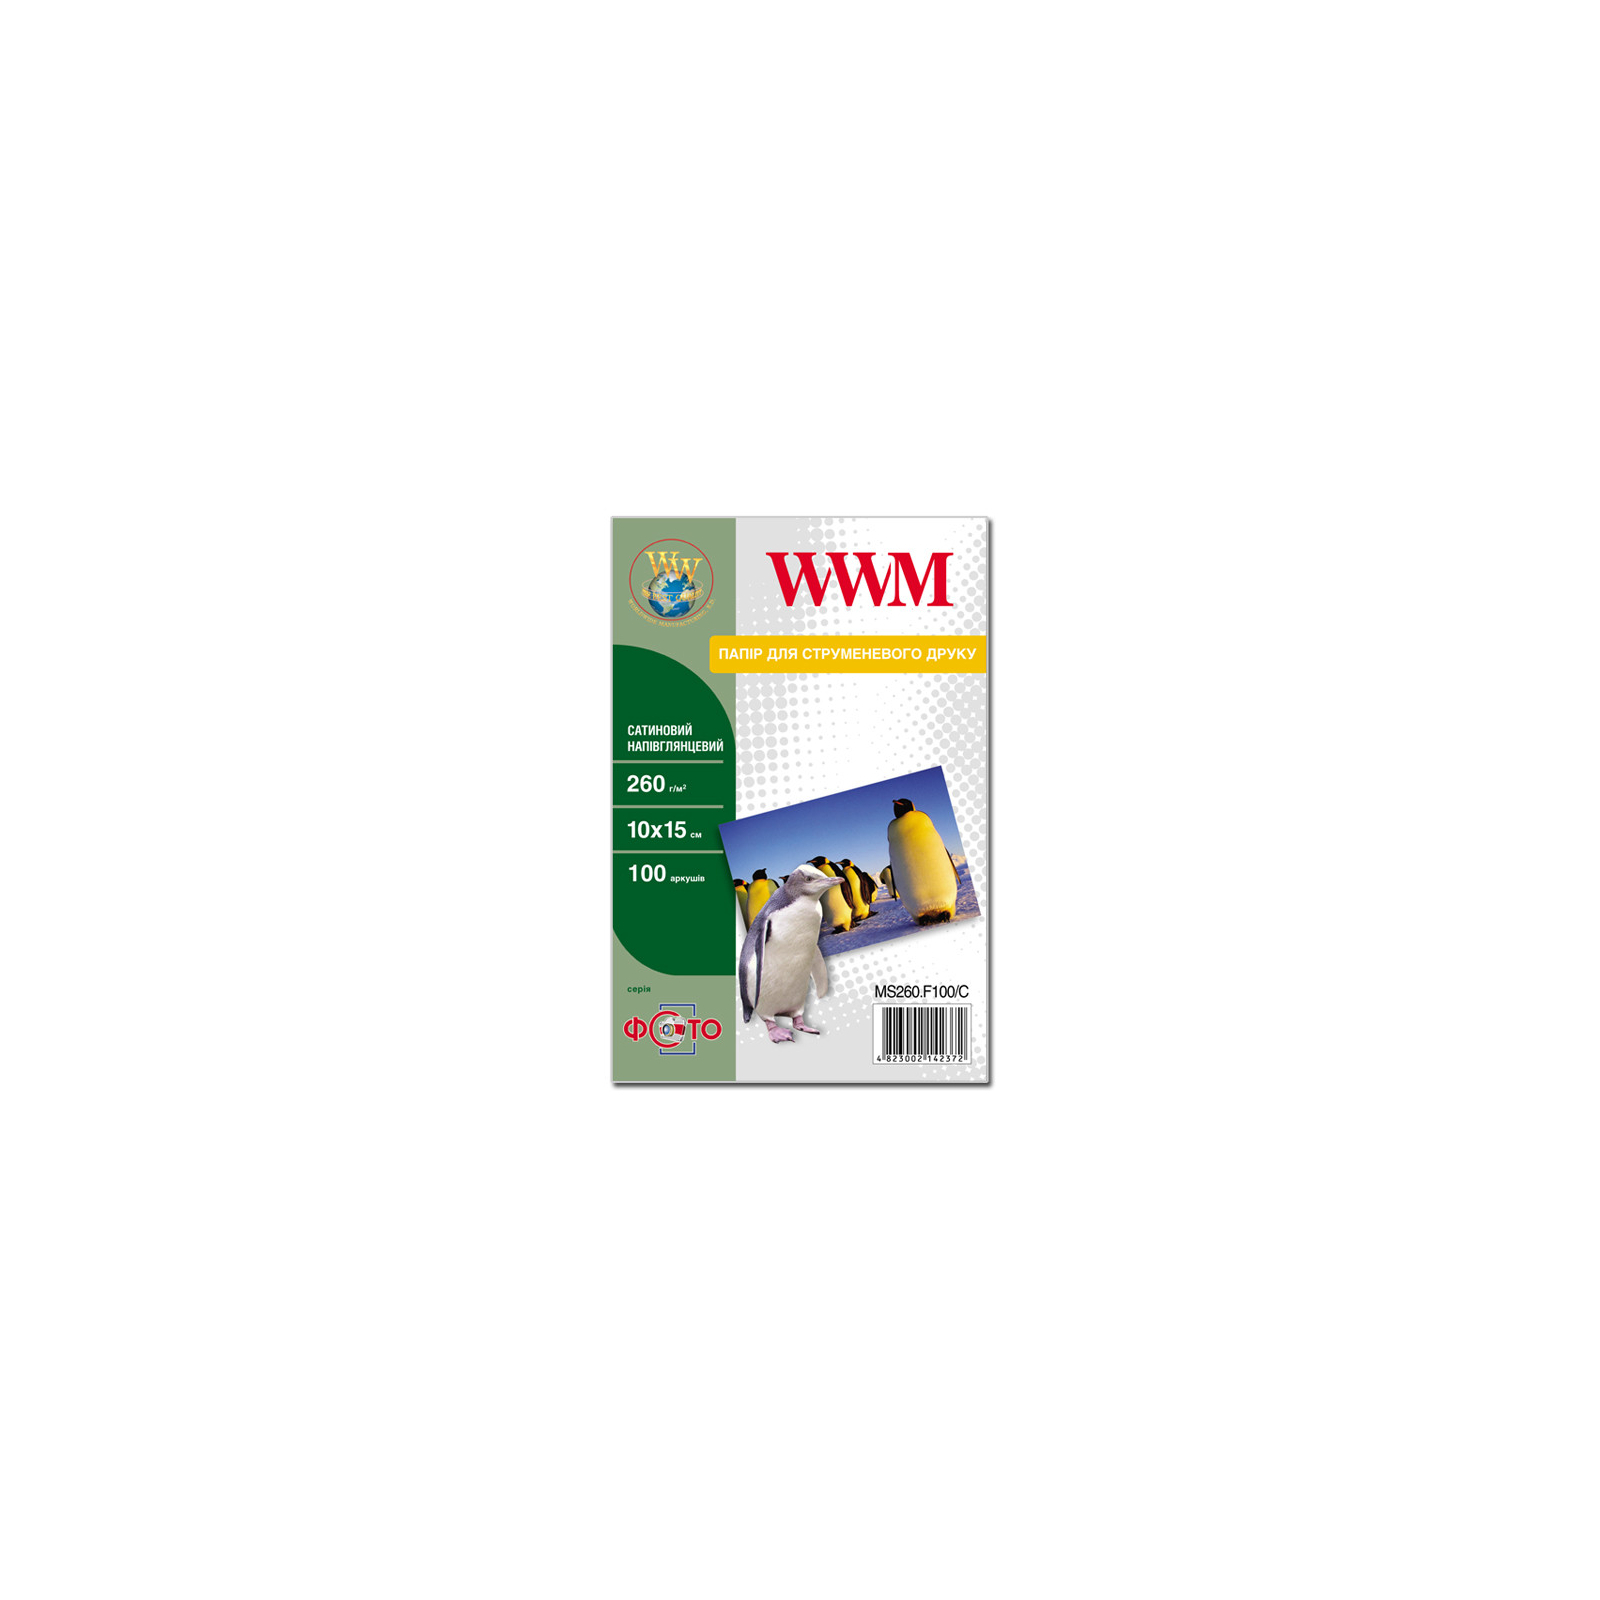 Фотопапір WWM 10x15 (MS260.F100/C)